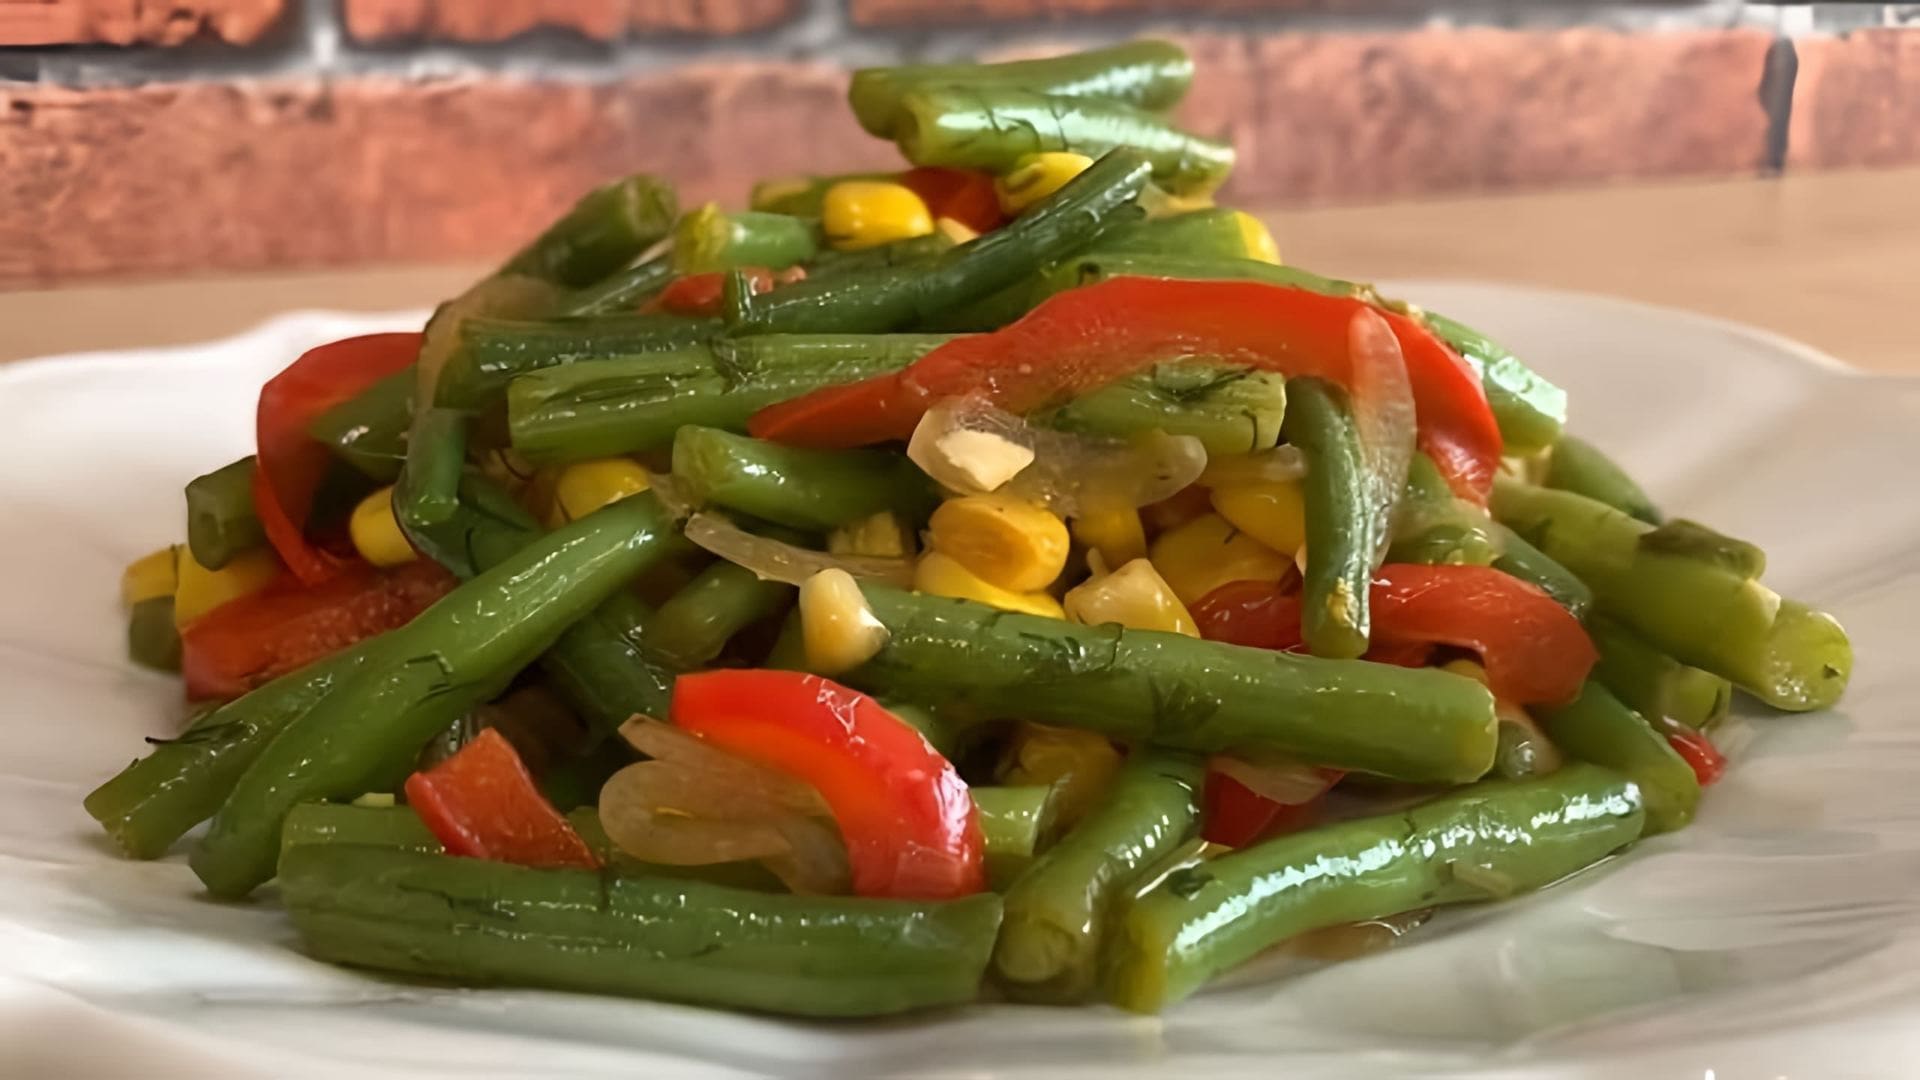 Вкуснейший салат из стручковой фасоли и кукурузы - это видео-ролик, который демонстрирует процесс приготовления вкусного и полезного салата из стручковой фасоли и кукурузы